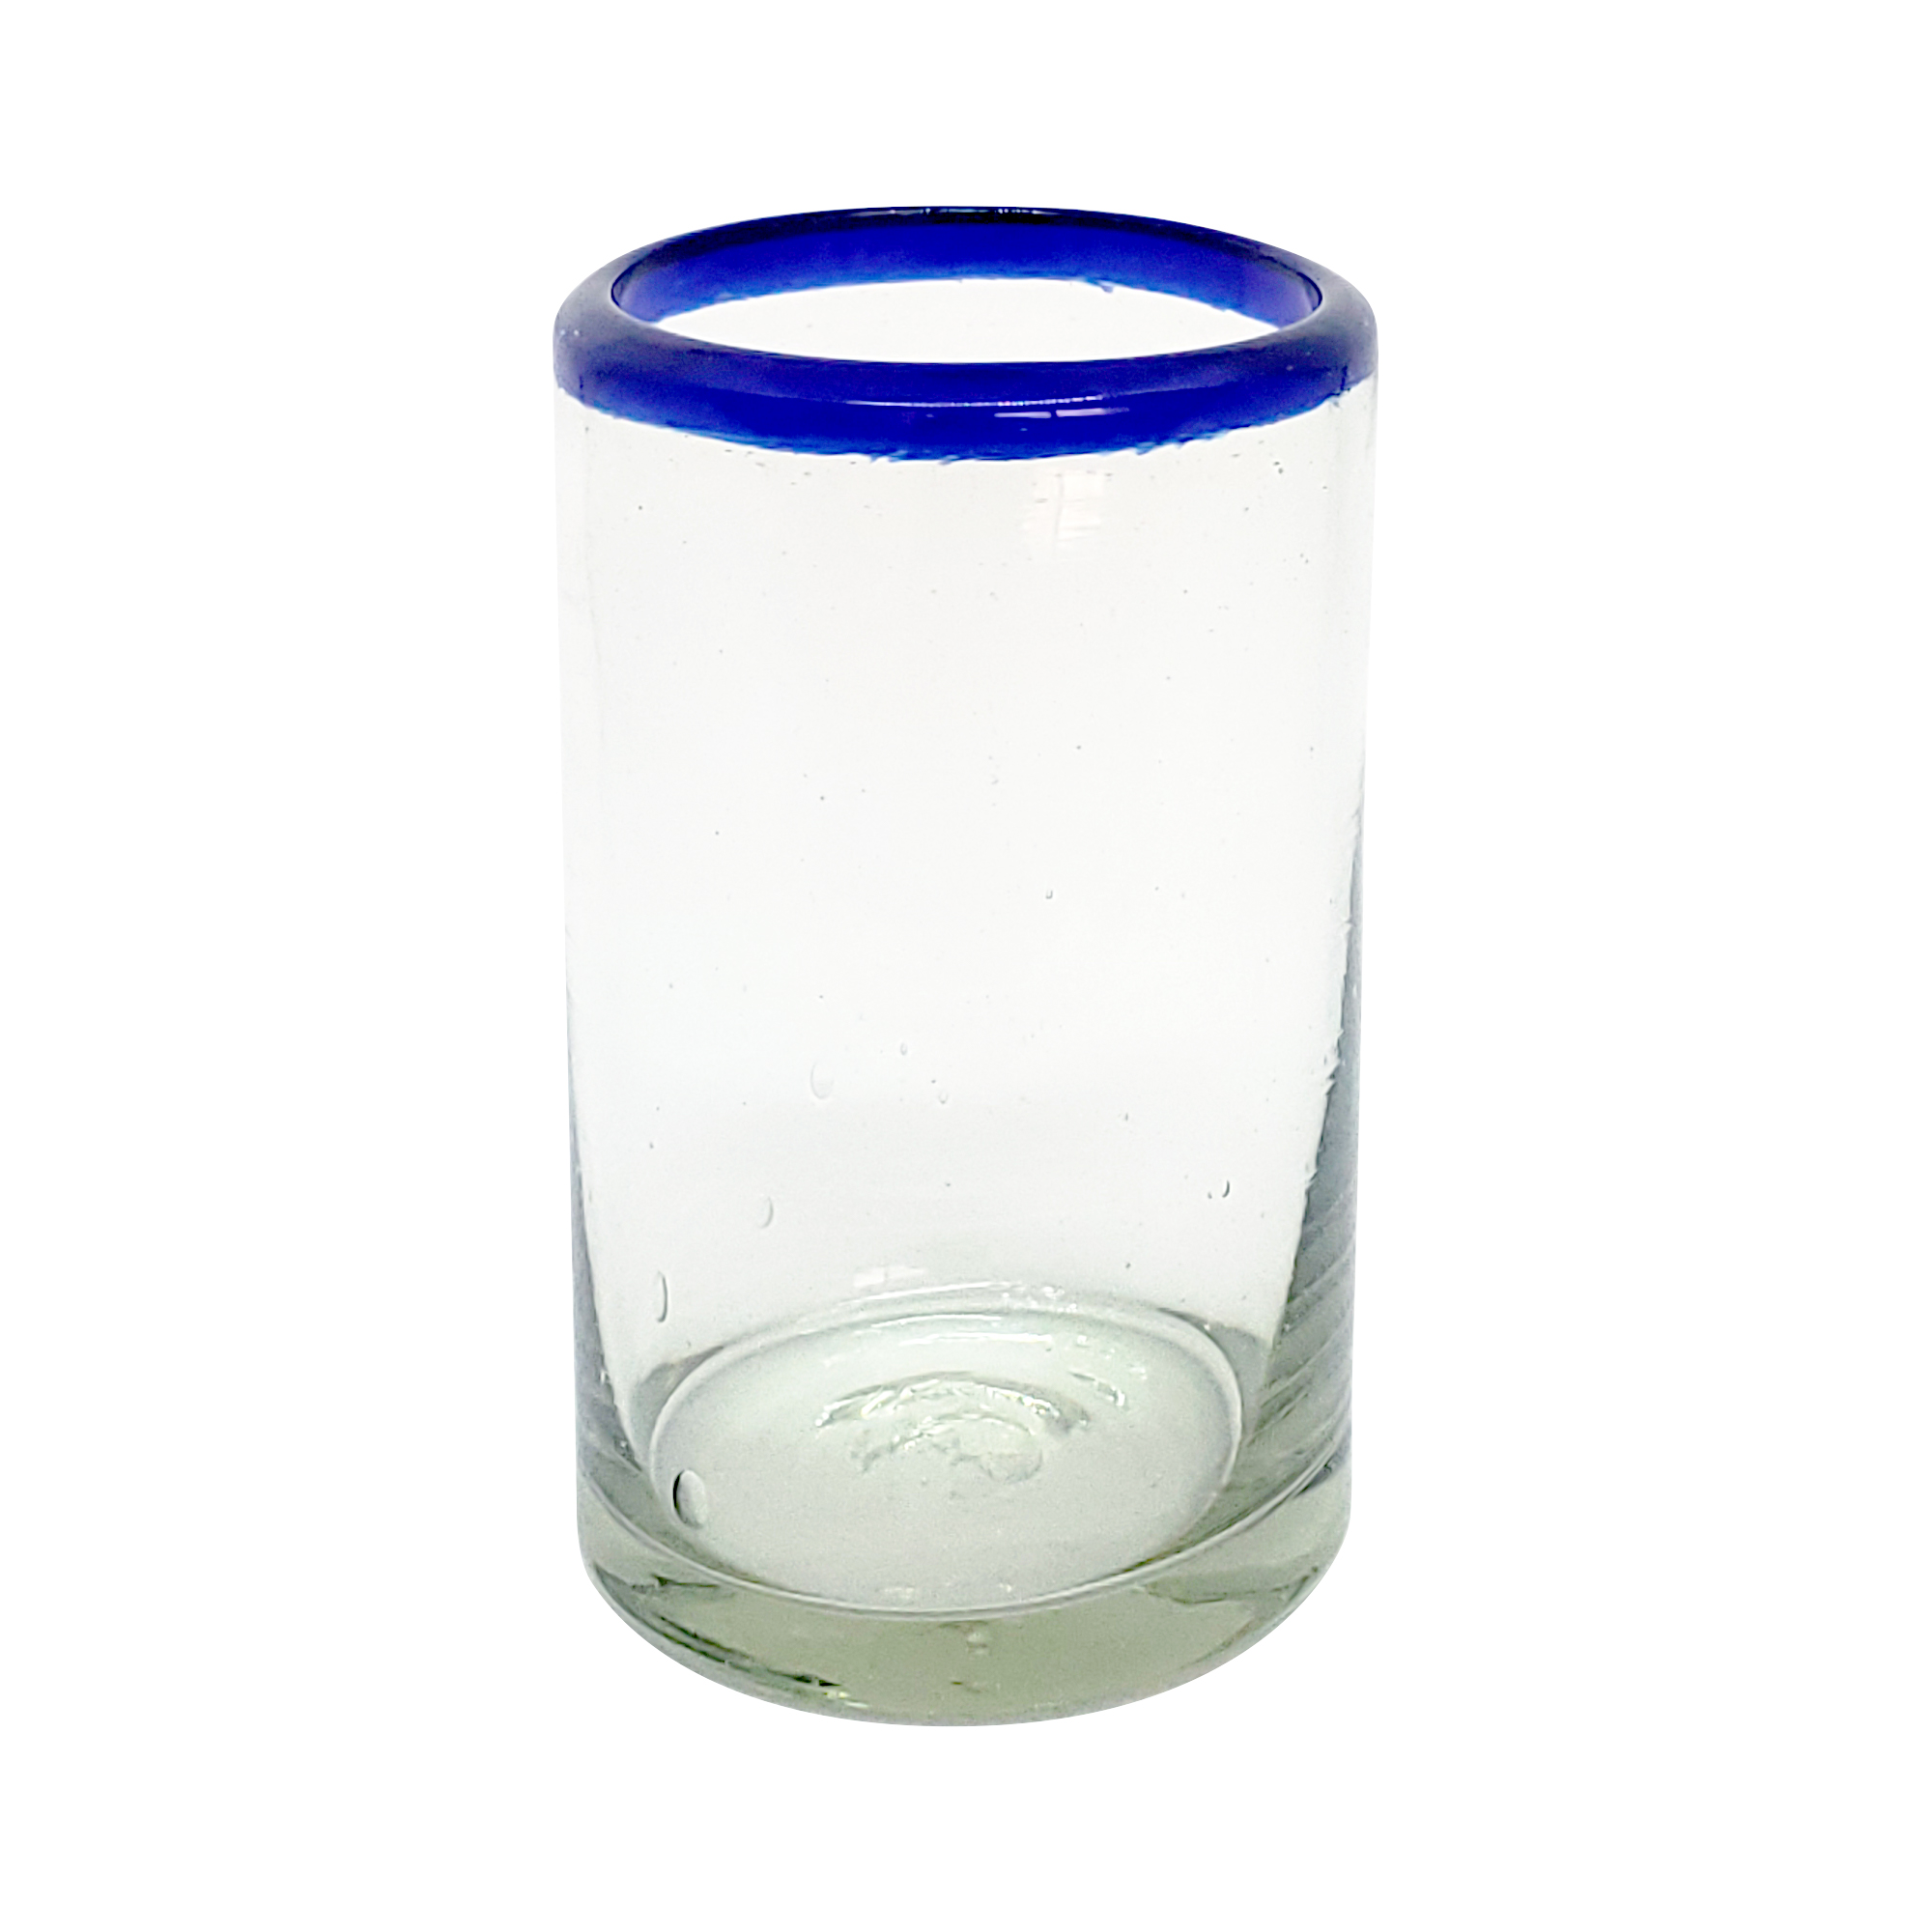 Ofertas / Juego de 6 vasos para jugo con borde azul cobalto / Para los que disfruten de jugo fresco de frutas por la mañana, éstos pequeños vasos tienen el tamaño perfecto. Hechos de vidrio reciclado auténtico.